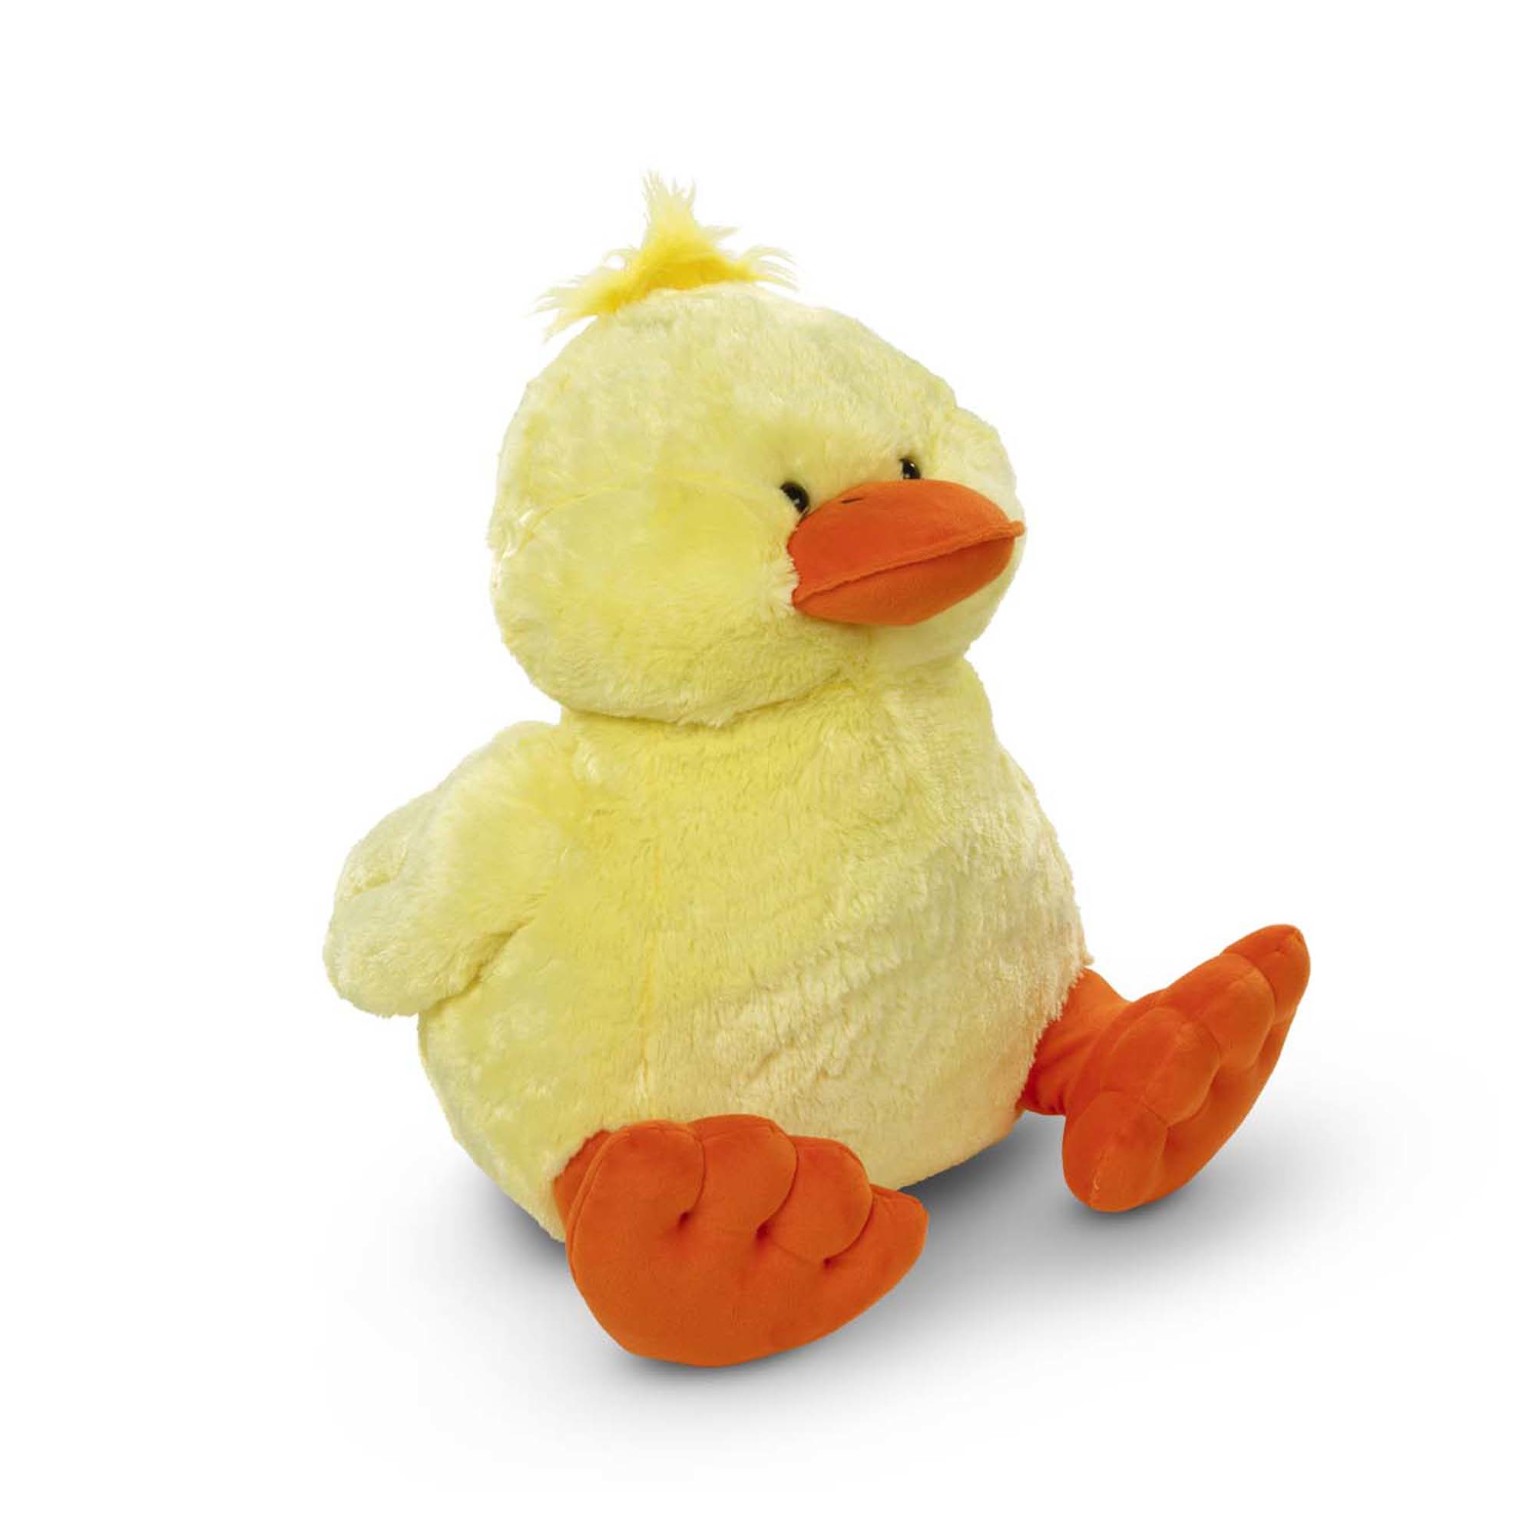 giant stuffed animal duck